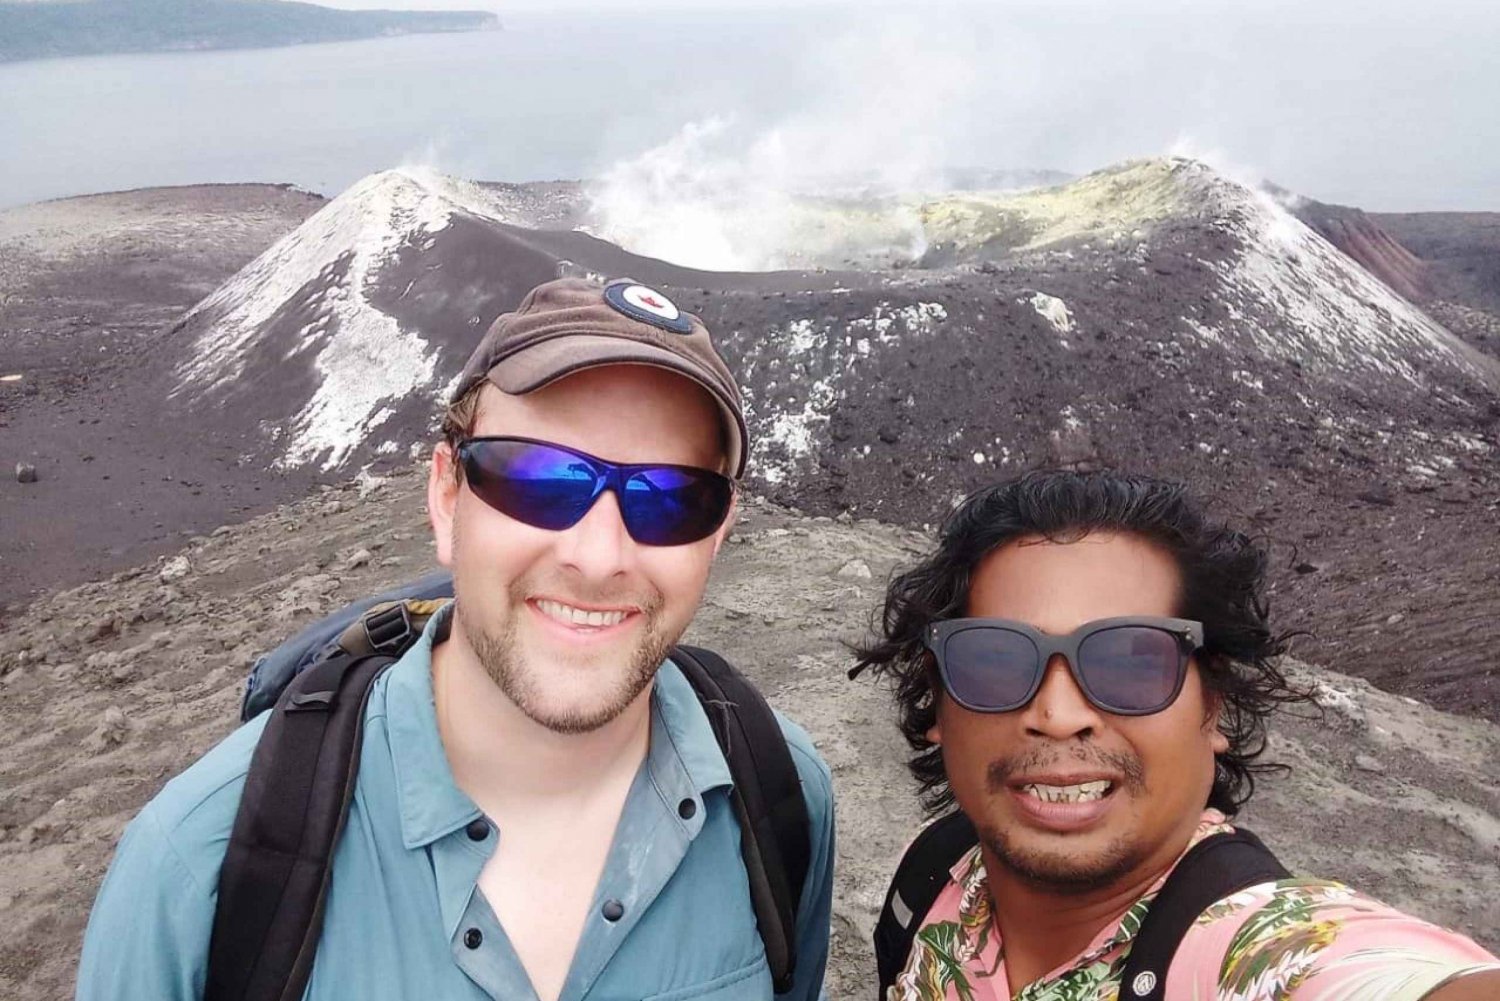 Excursión de un día al Volcán Krakatoa desde Yakarta